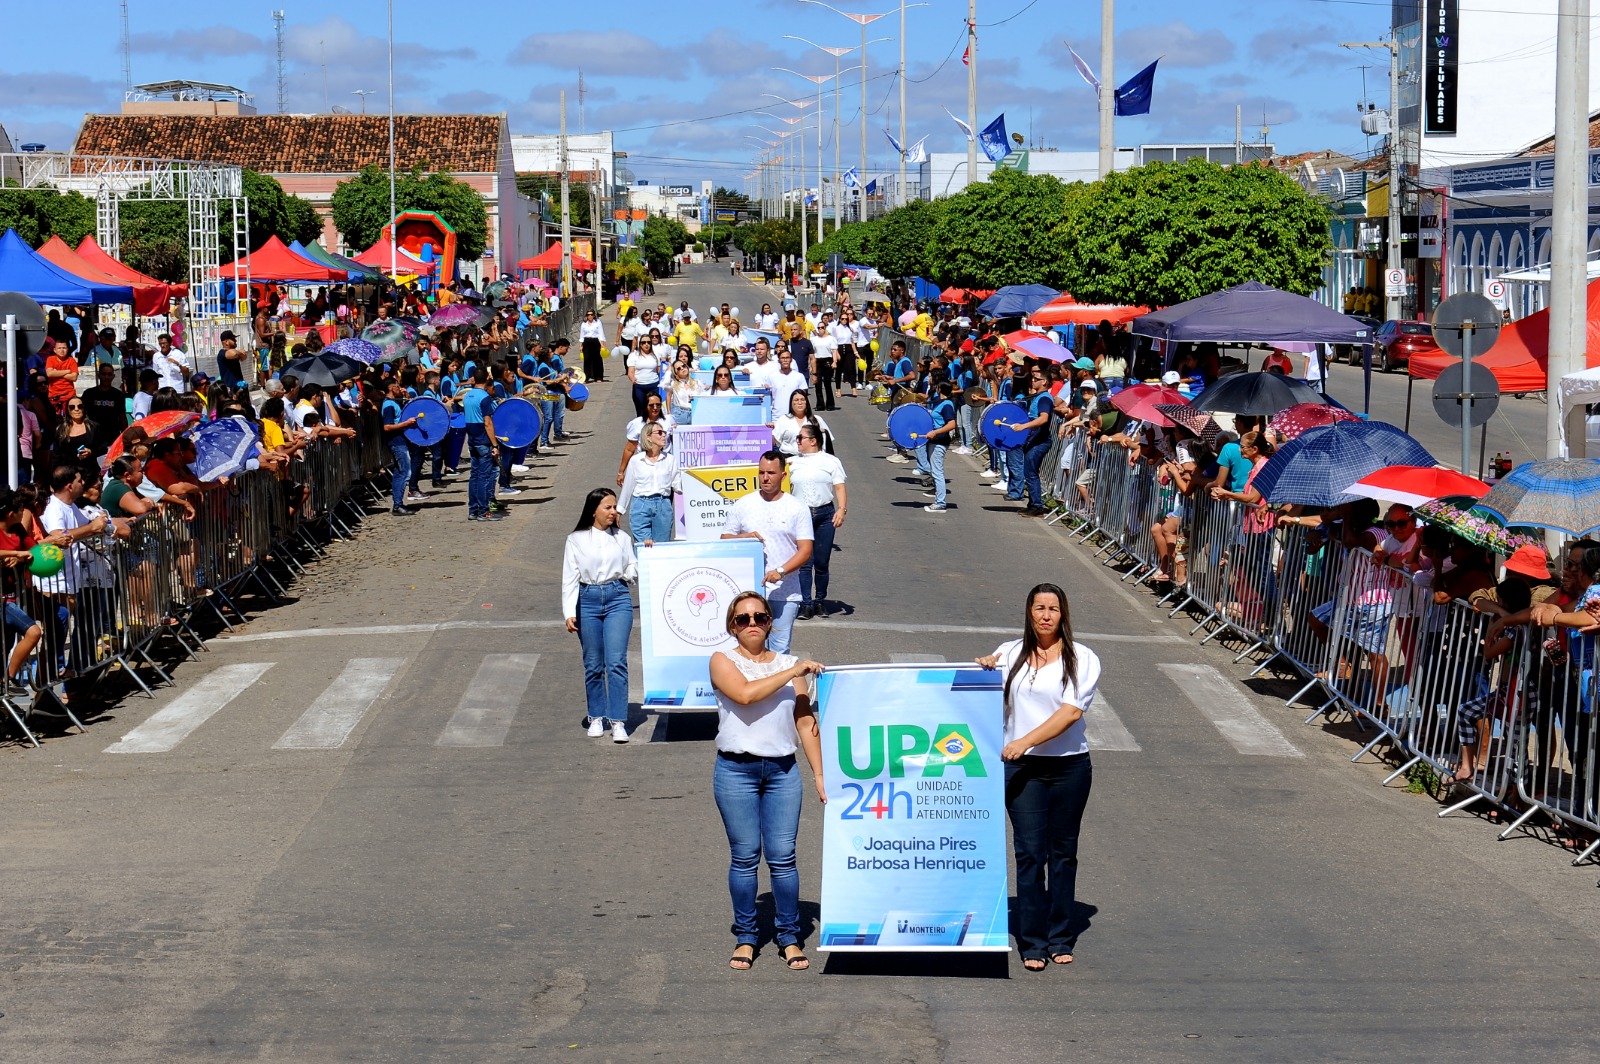 Desfiles-Civicos-em-Monteiro-acontecem-com-grande-presenca-de-publico-e-autoridades-25 Desfiles Cívicos em Monteiro acontecem com grande presença de público e autoridades